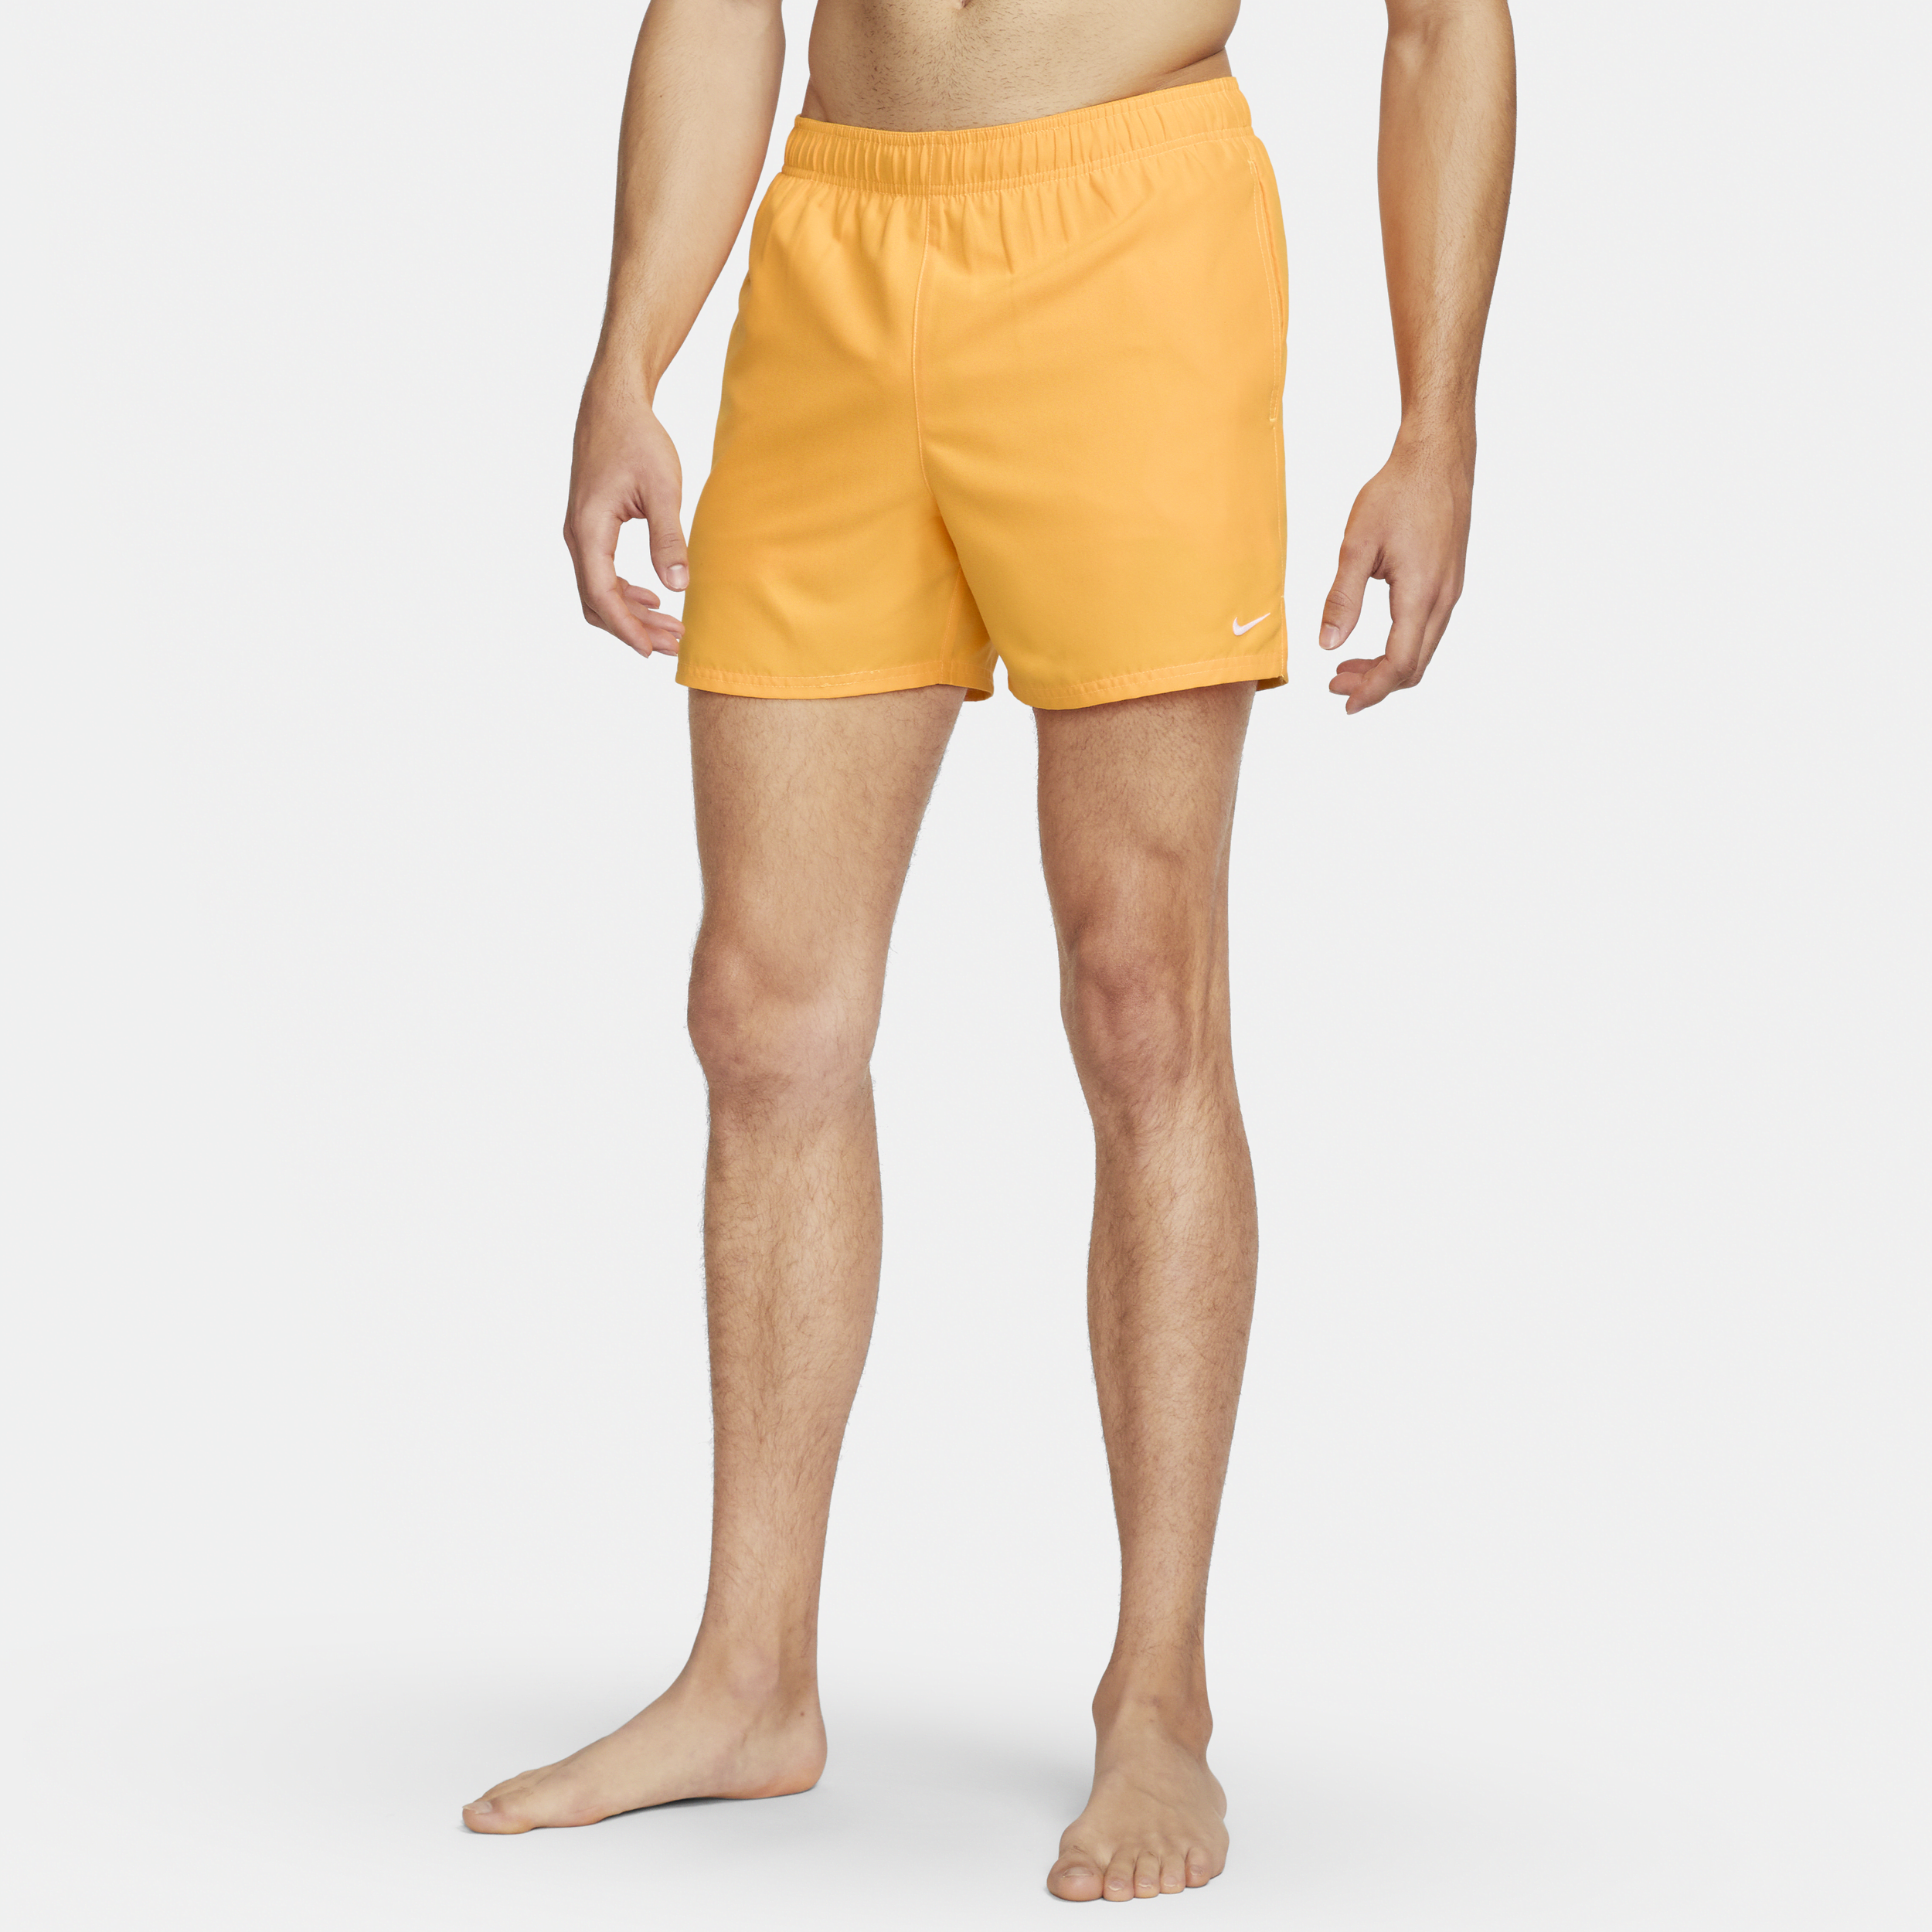 Shorts da mare Lap Volley 13 cm Nike Essential – Uomo - Giallo